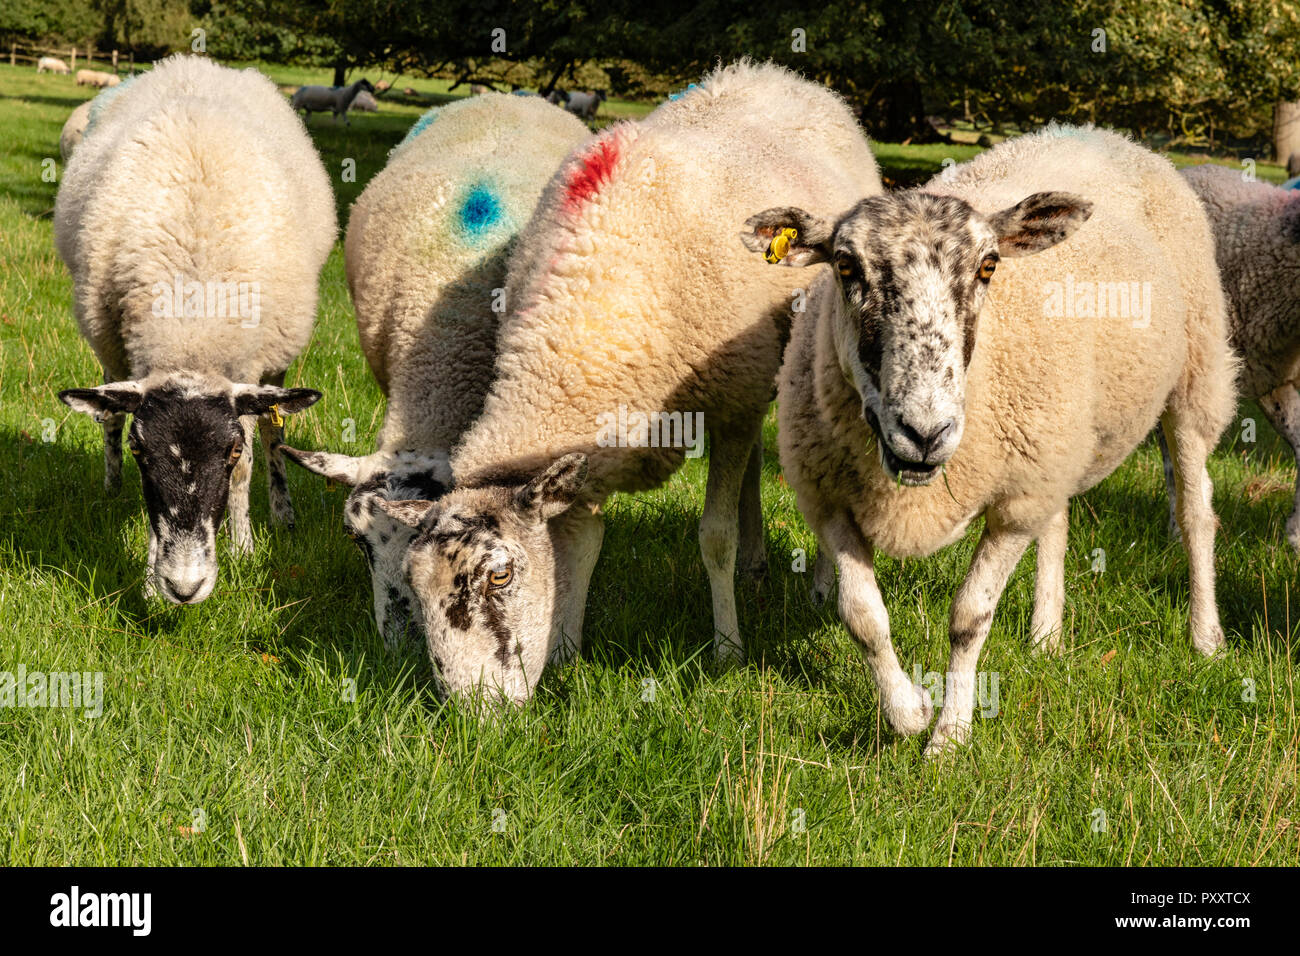 Le mouton domestique (Ovis aries) le pâturage dans un petit groupe avec une recherche à l'appareil photo. Large choix de tir amusant Banque D'Images